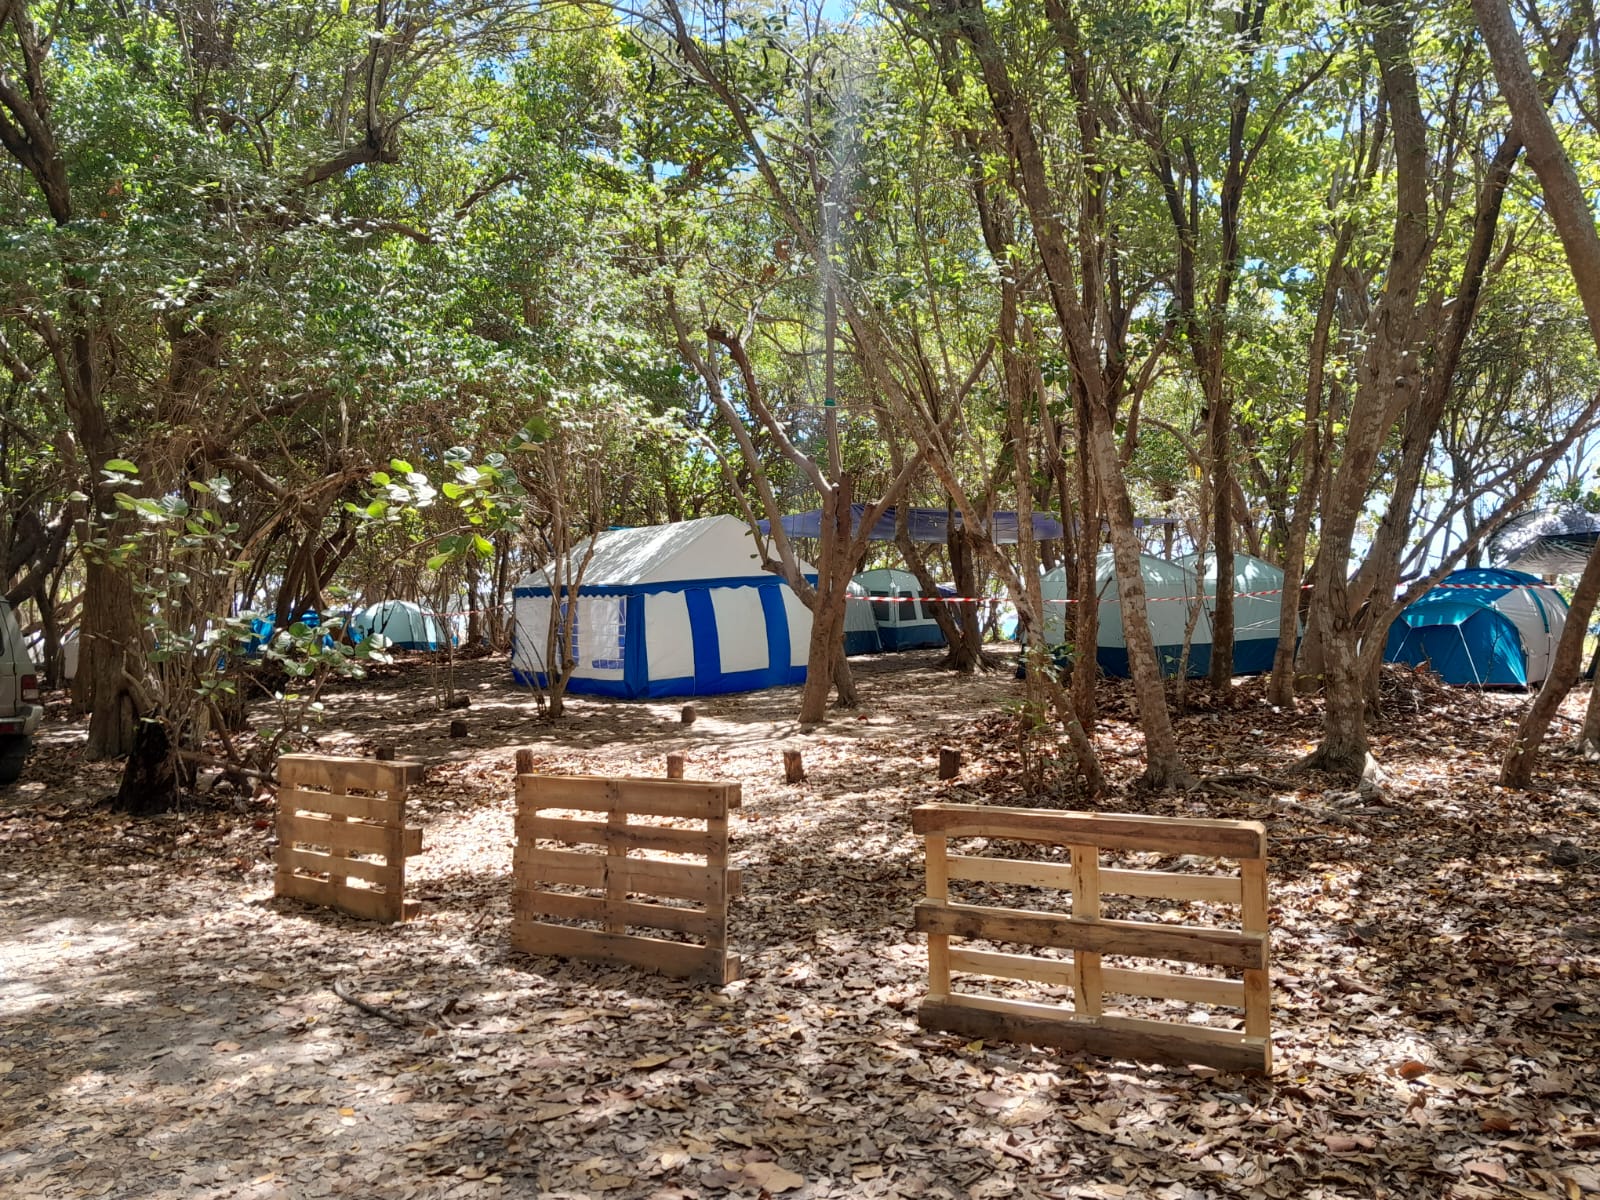     À Sainte-Anne, le traditionnel camping de Pâques est encadré et surveillé

